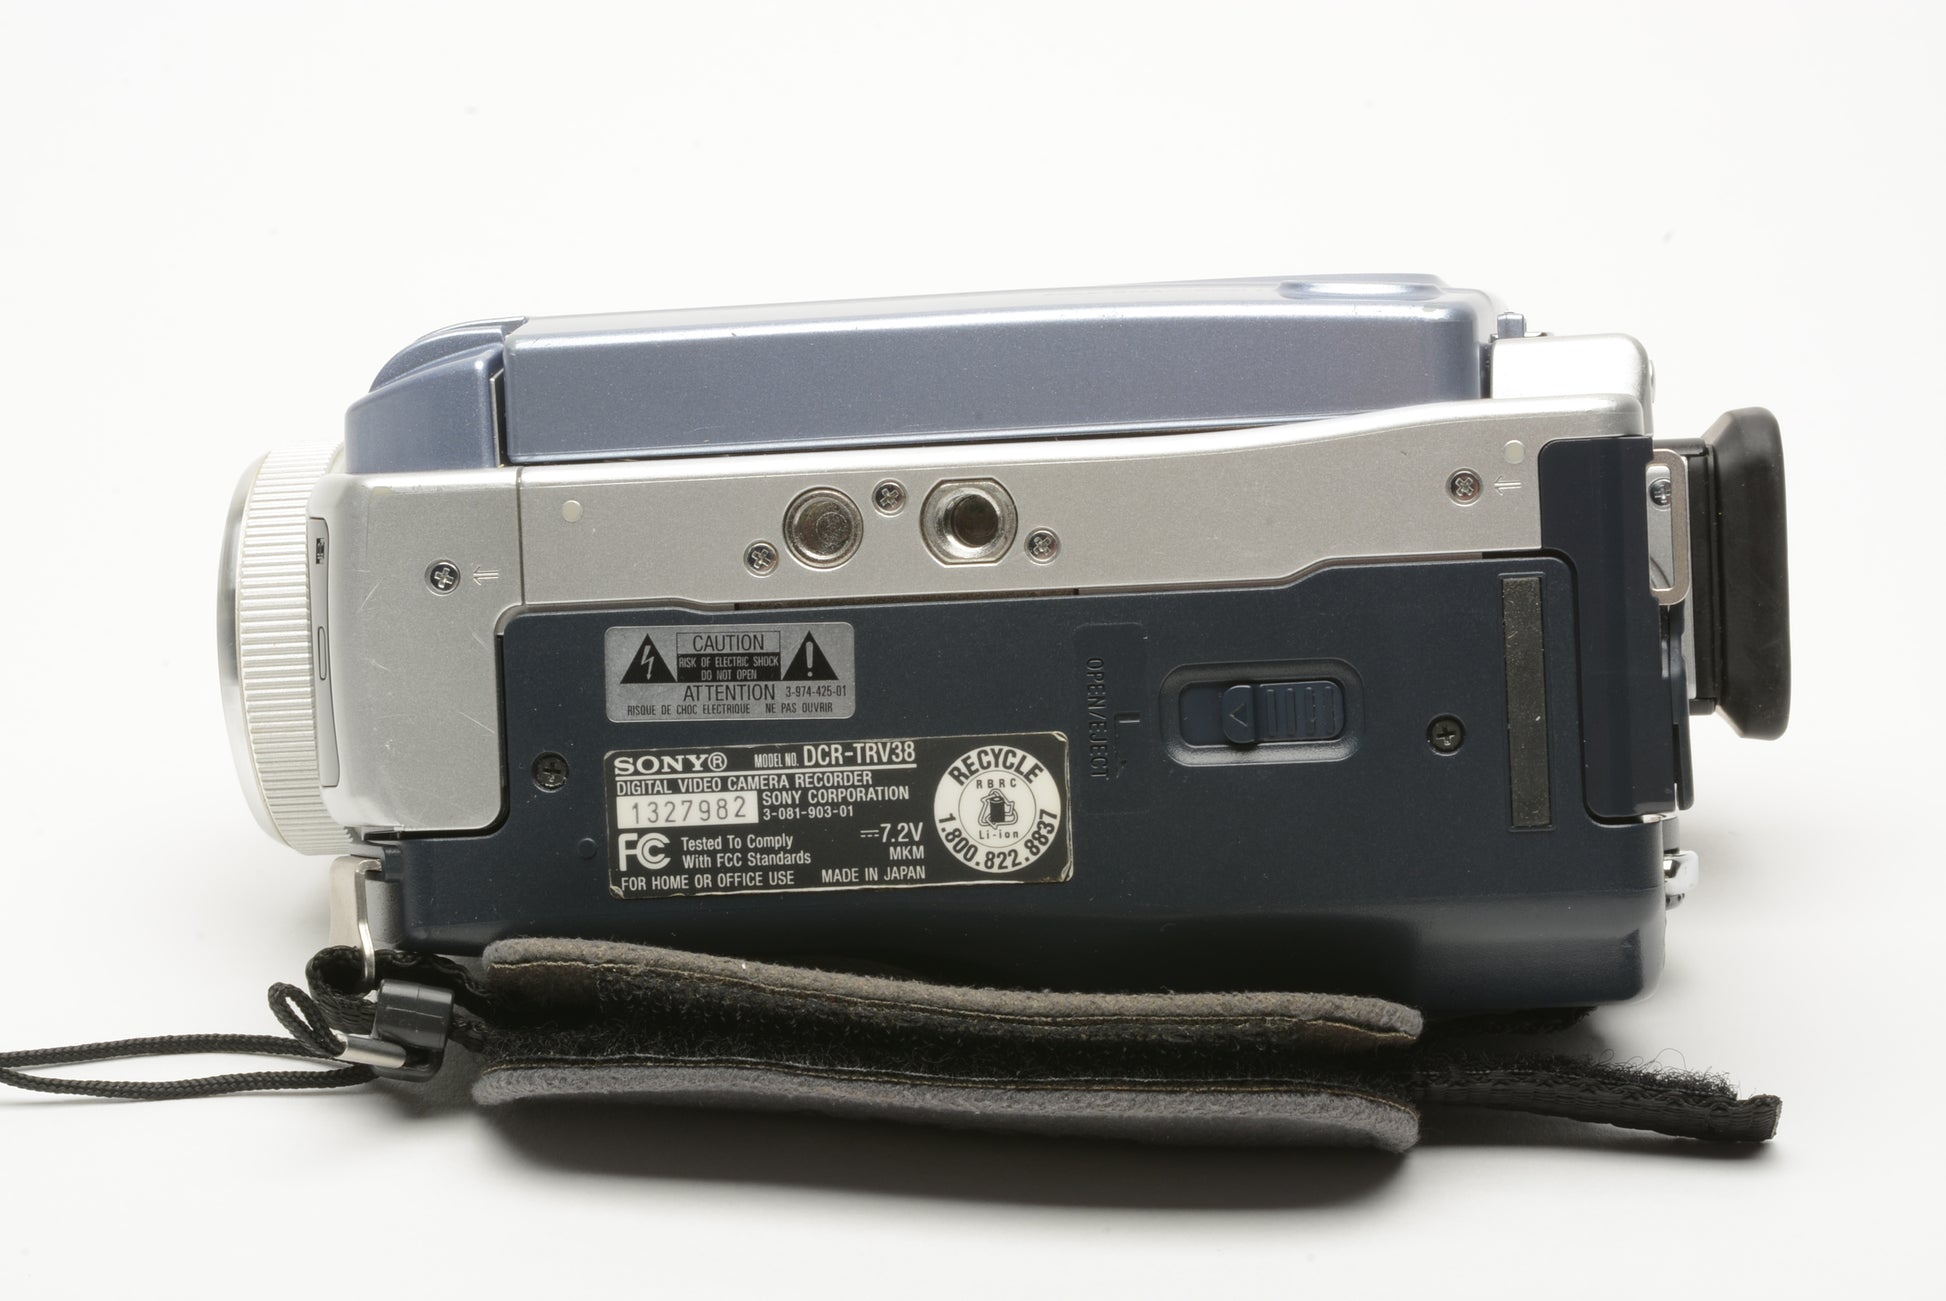 5 Sony TRV39 DV6 Mini DV camcorder tape cassette for TRV27 TRV30 TRV33 TRV38